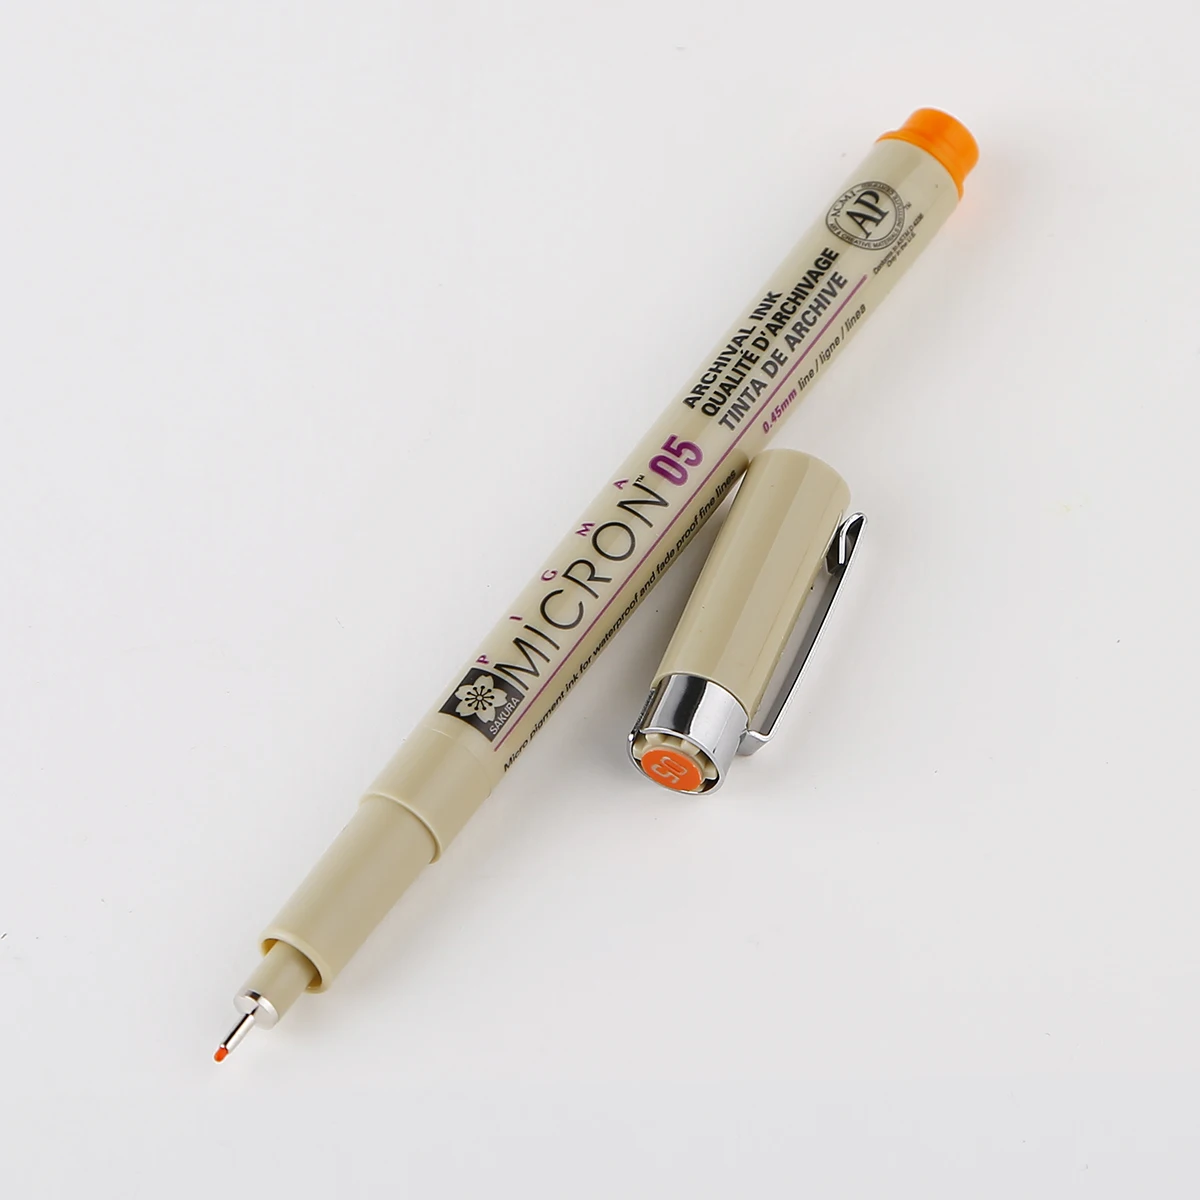 1 шт Сакура цветная ручка Pigma micron 0,25 мм 0,45 мм тонкий лайнер для рисования маркеры для Dessin Эскиз Маркер Tekenen Cartoleria - Цвет: 05 orange